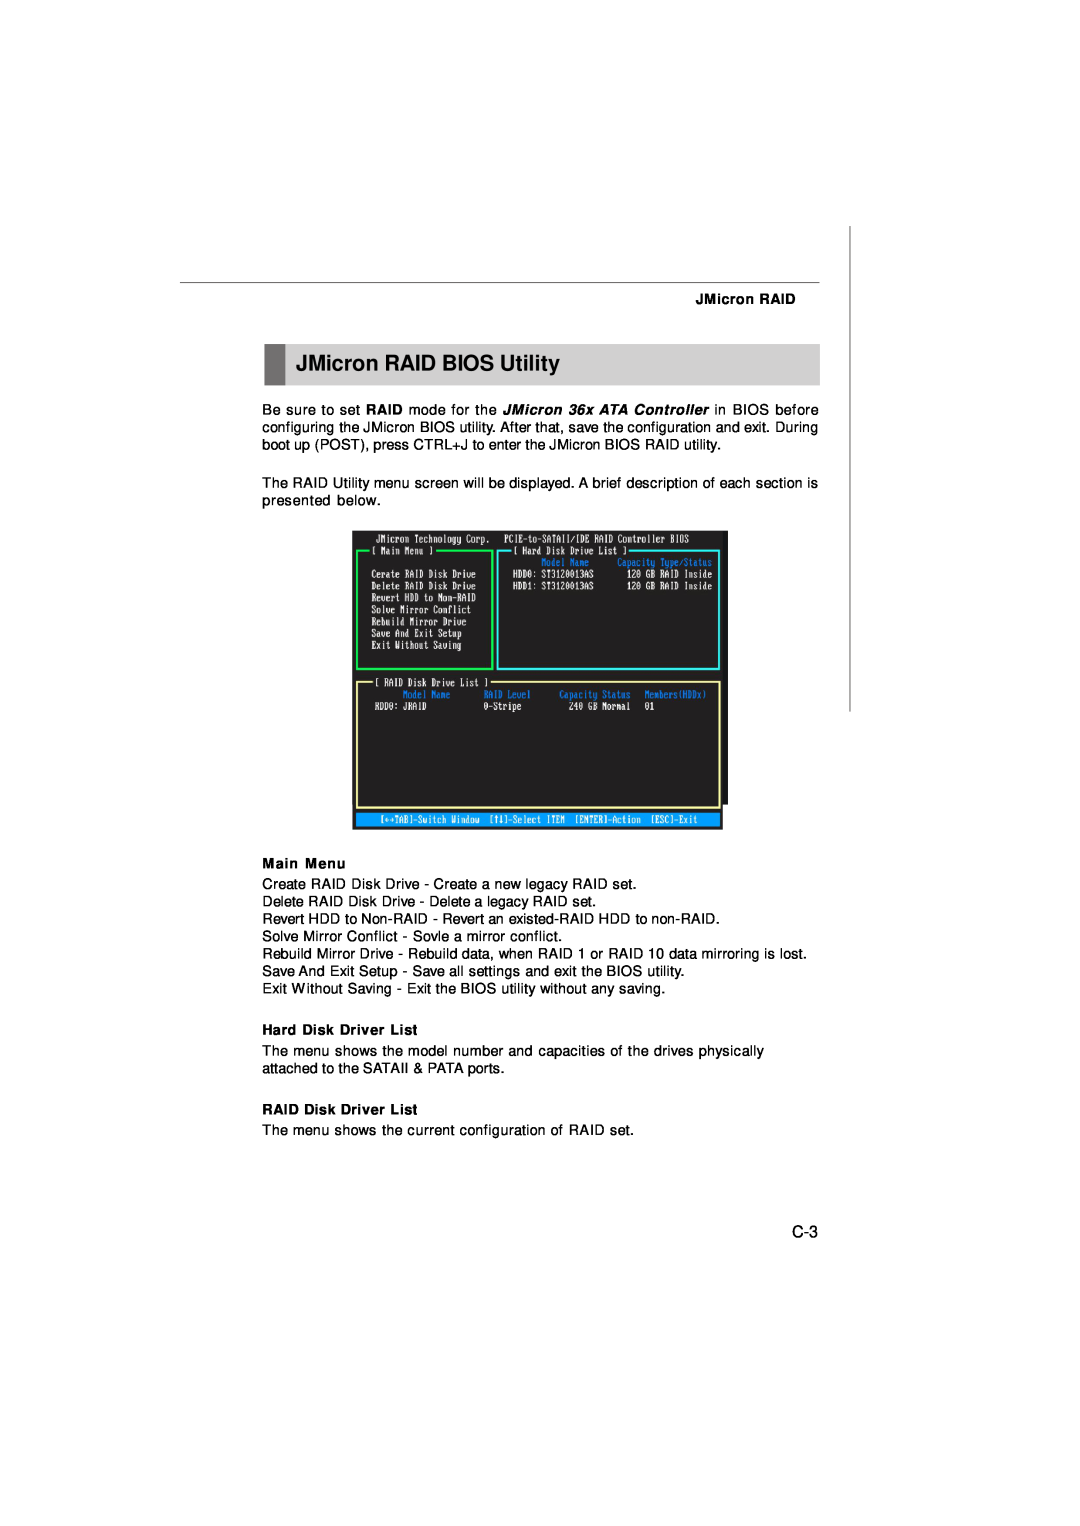 Nvidia MS-7374 manual JMicron RAID BIOS Utility, Hard Disk Driver List, RAID Disk Driver List, Main Menu 